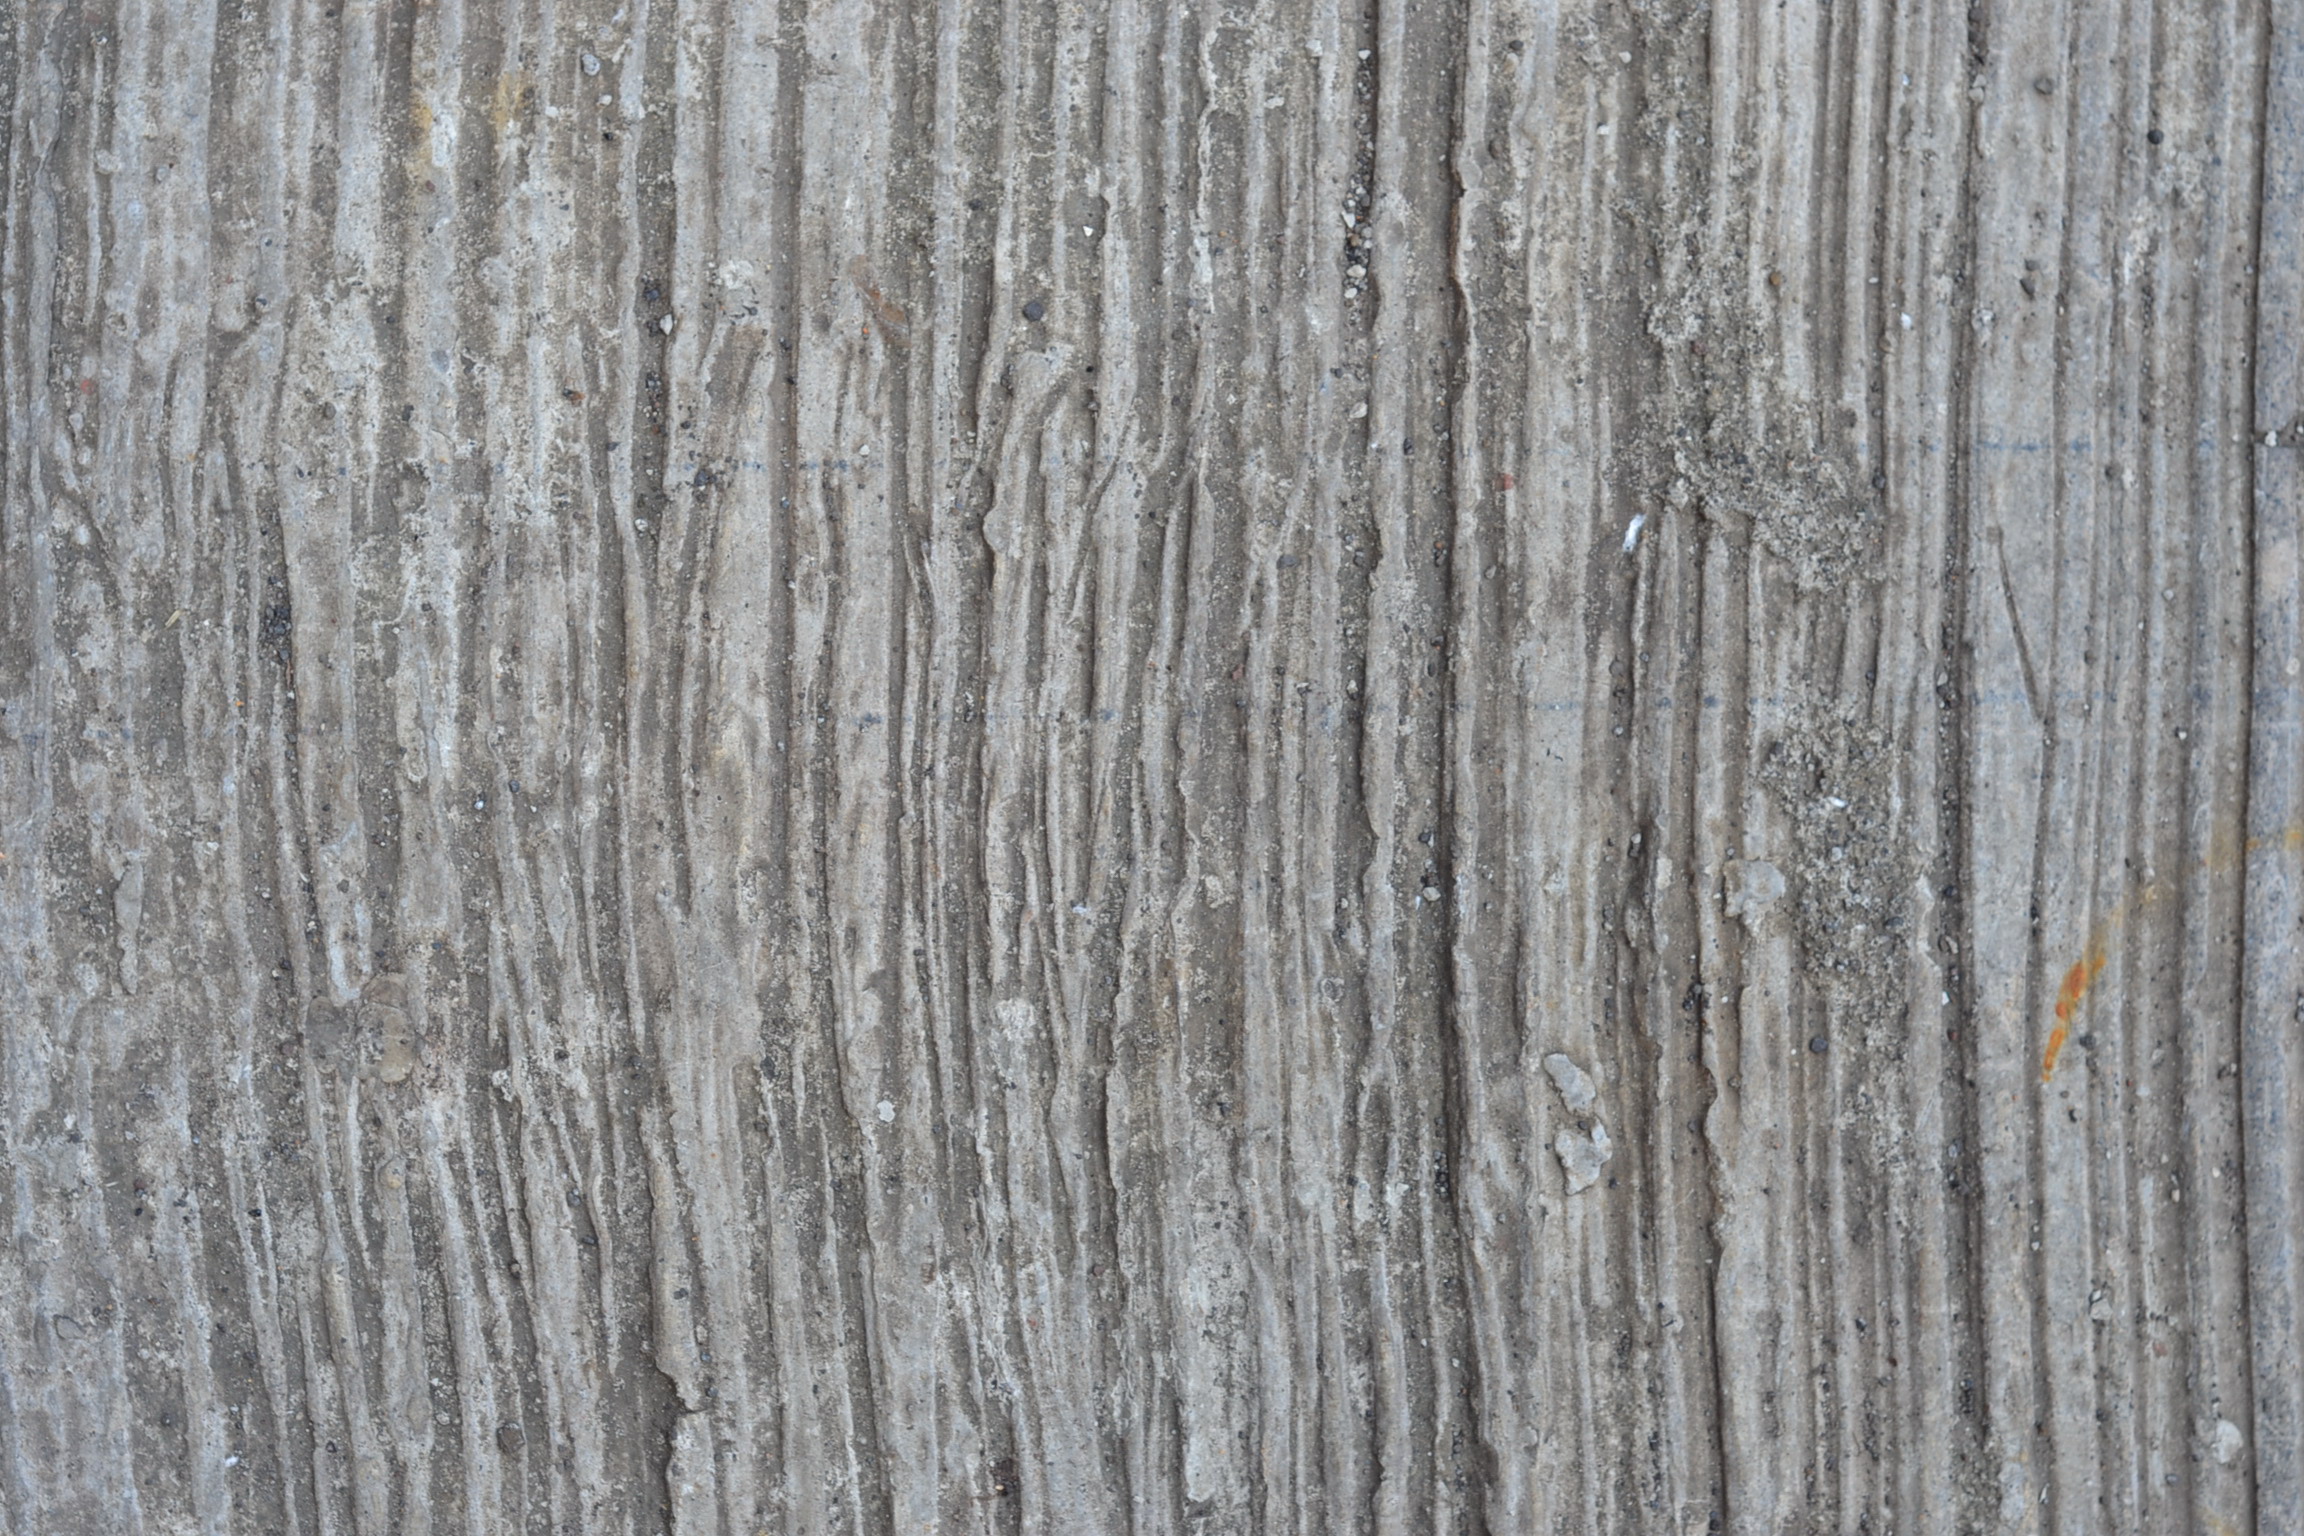 Rough concrete line texture photo